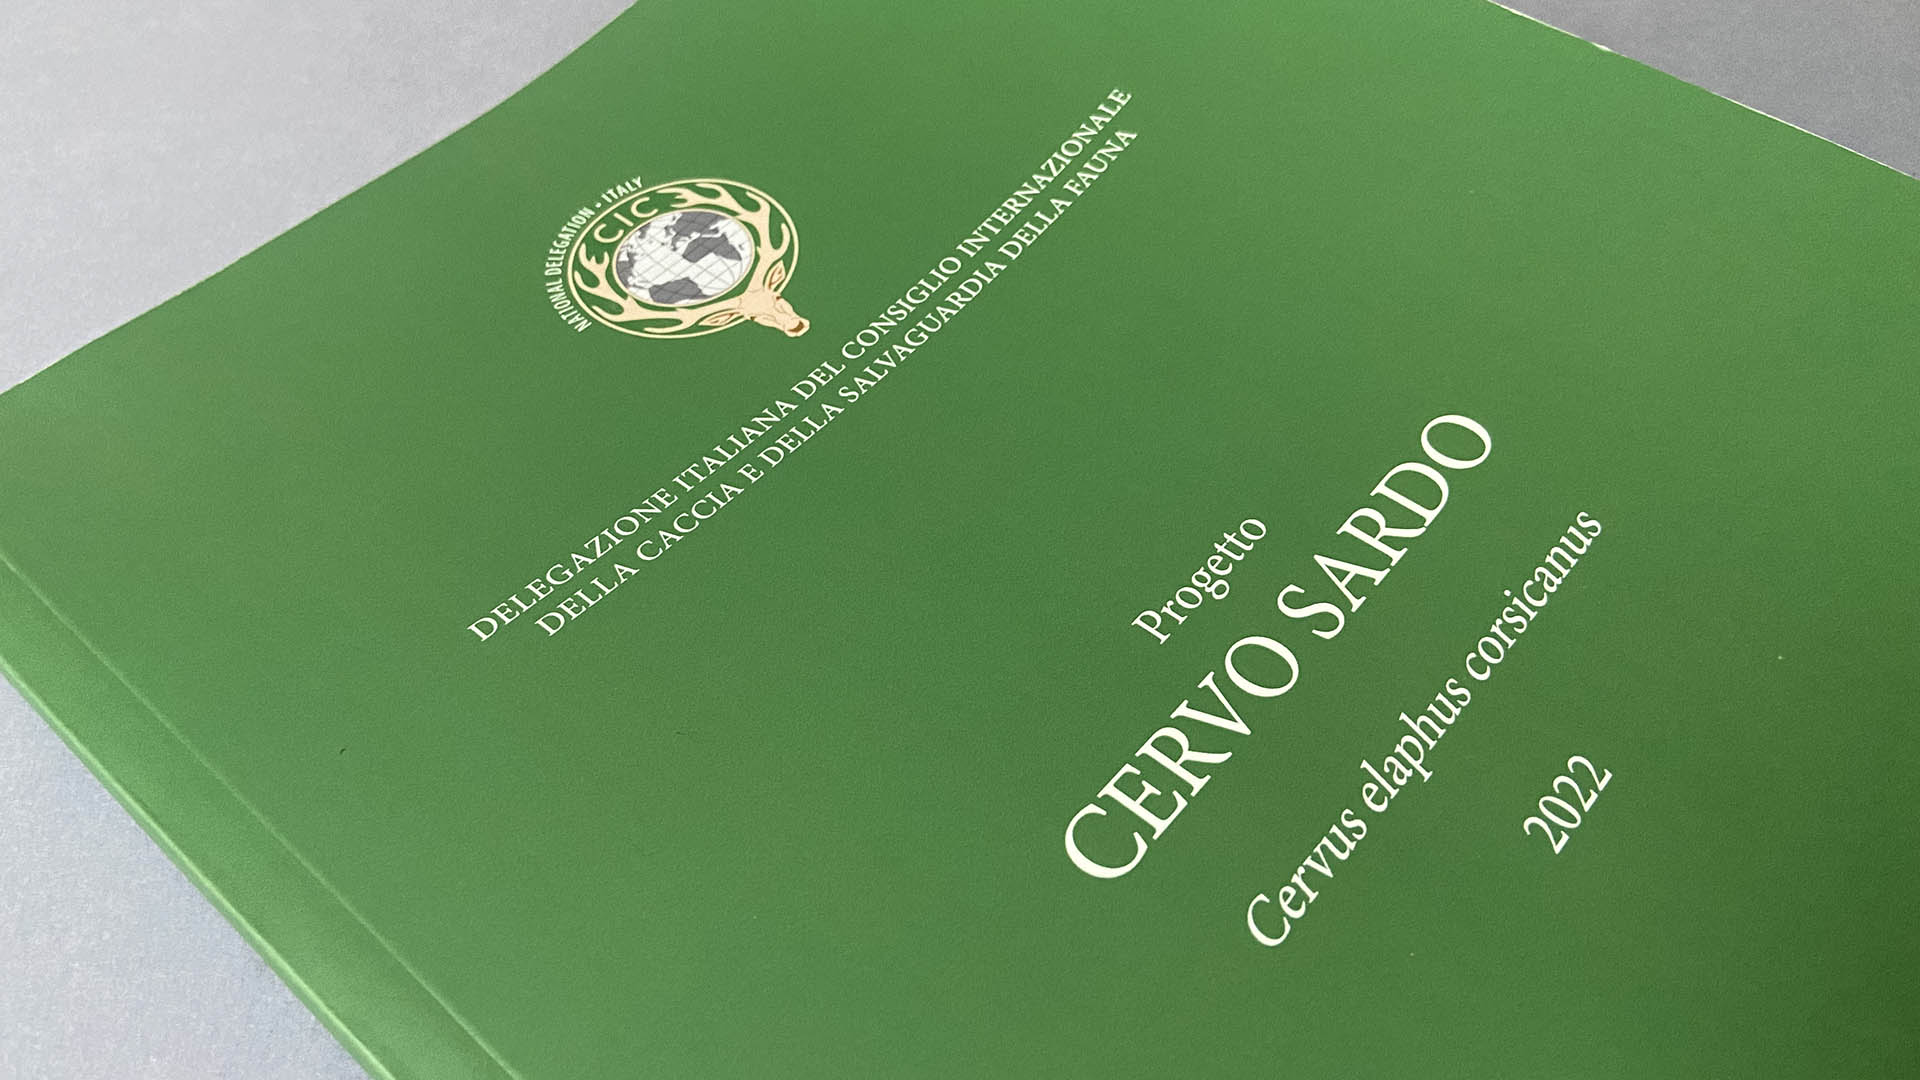 La Delegazione italiana del Cic ha dato alle stampe una pubblicazione contenente gli esiti del Progetto cervo sardo